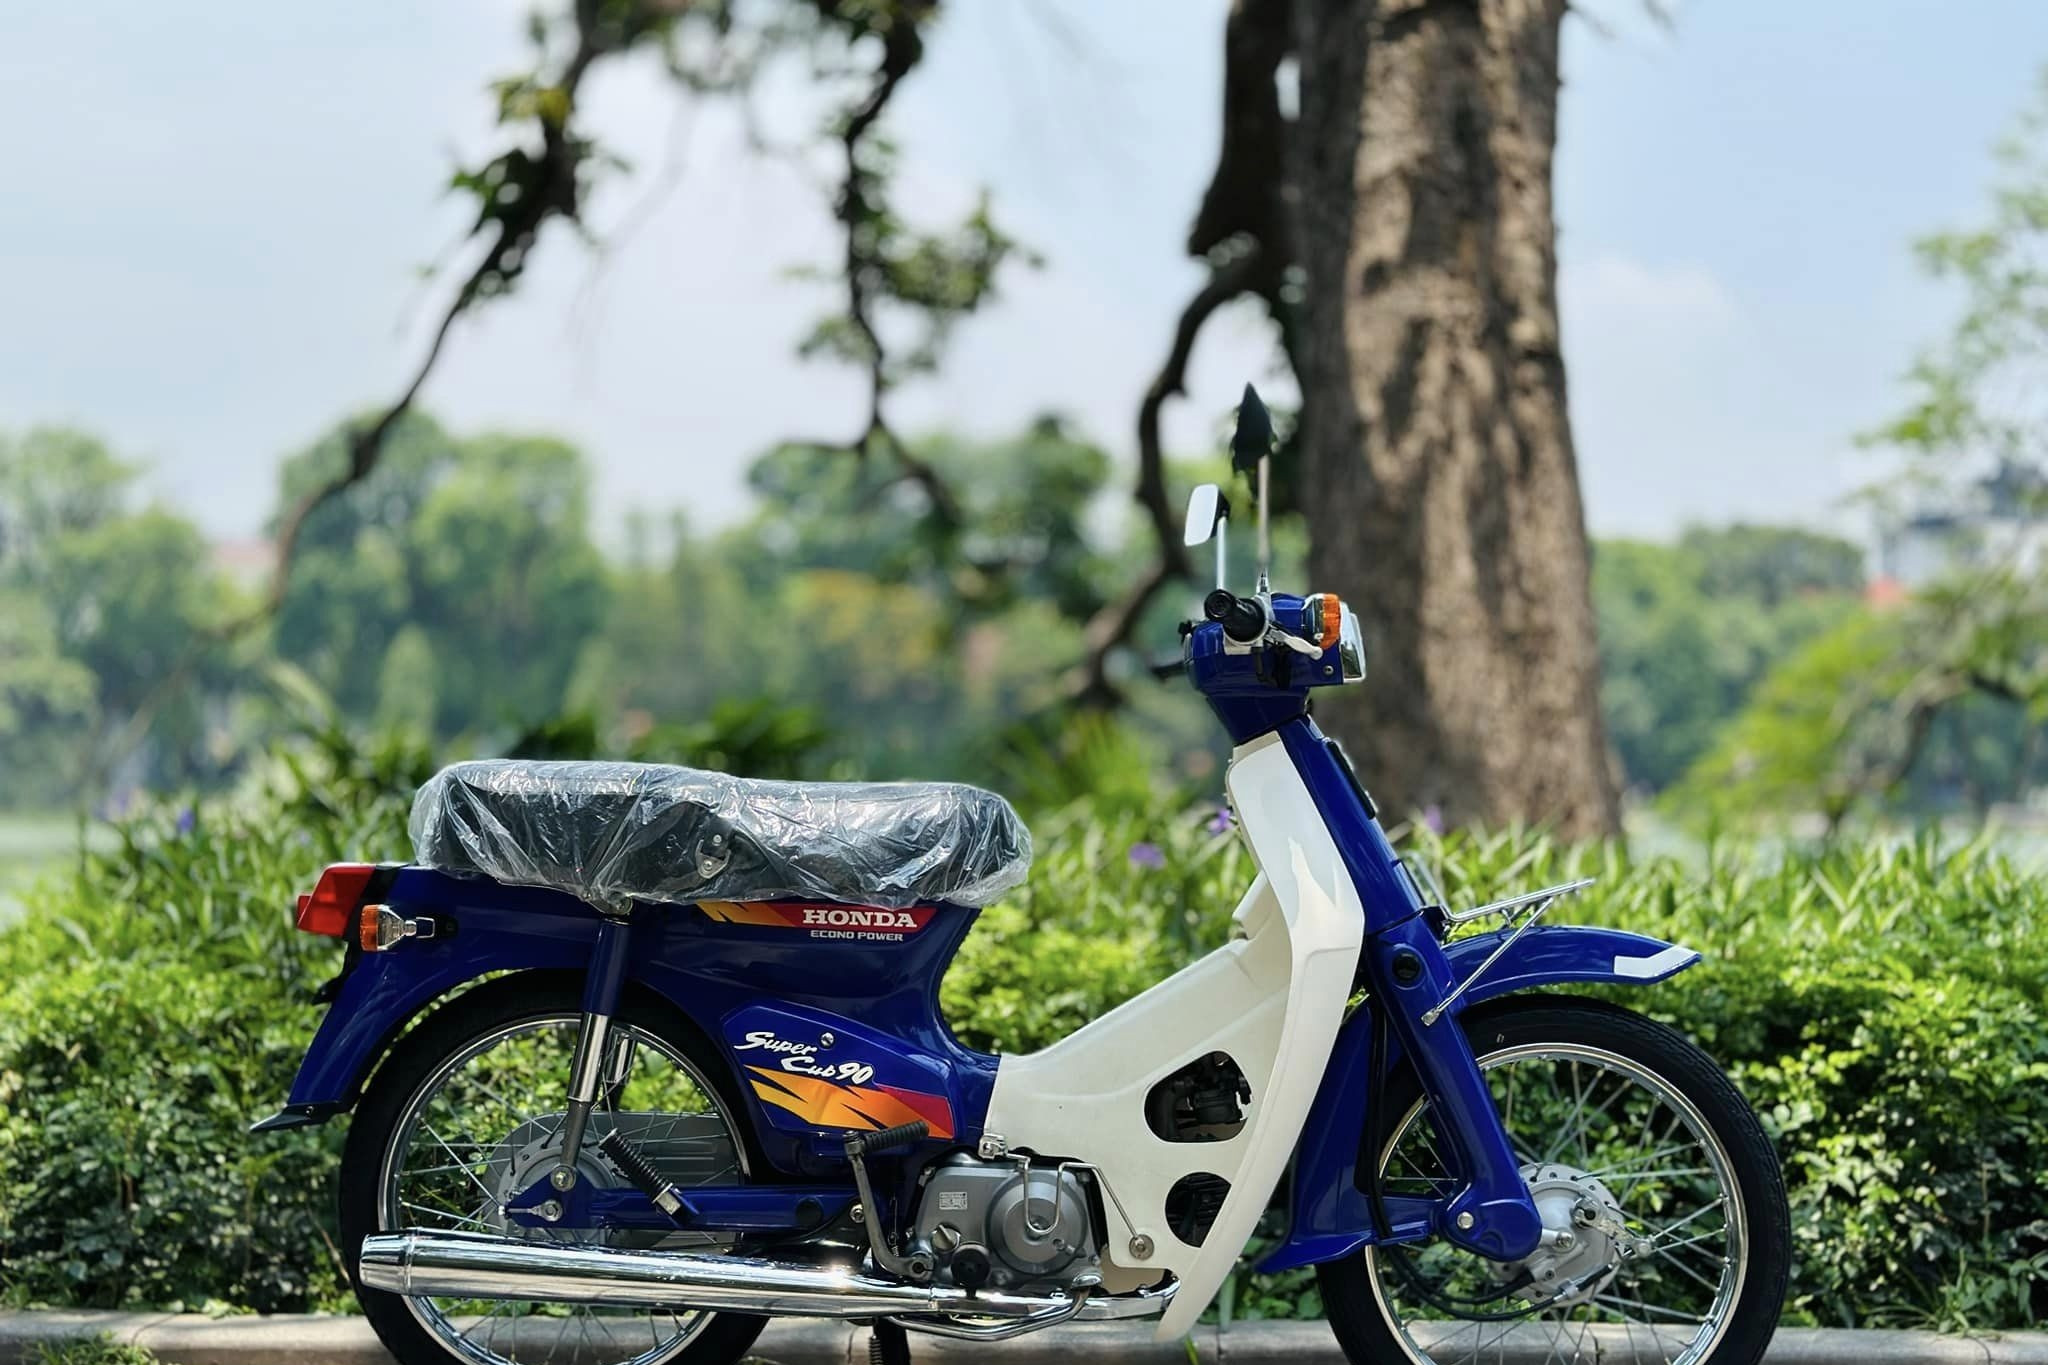 Mua xe máy ở đâu rẻ nhất Hà Nội Top 5 head Honda Hà Nội rẻ nhất